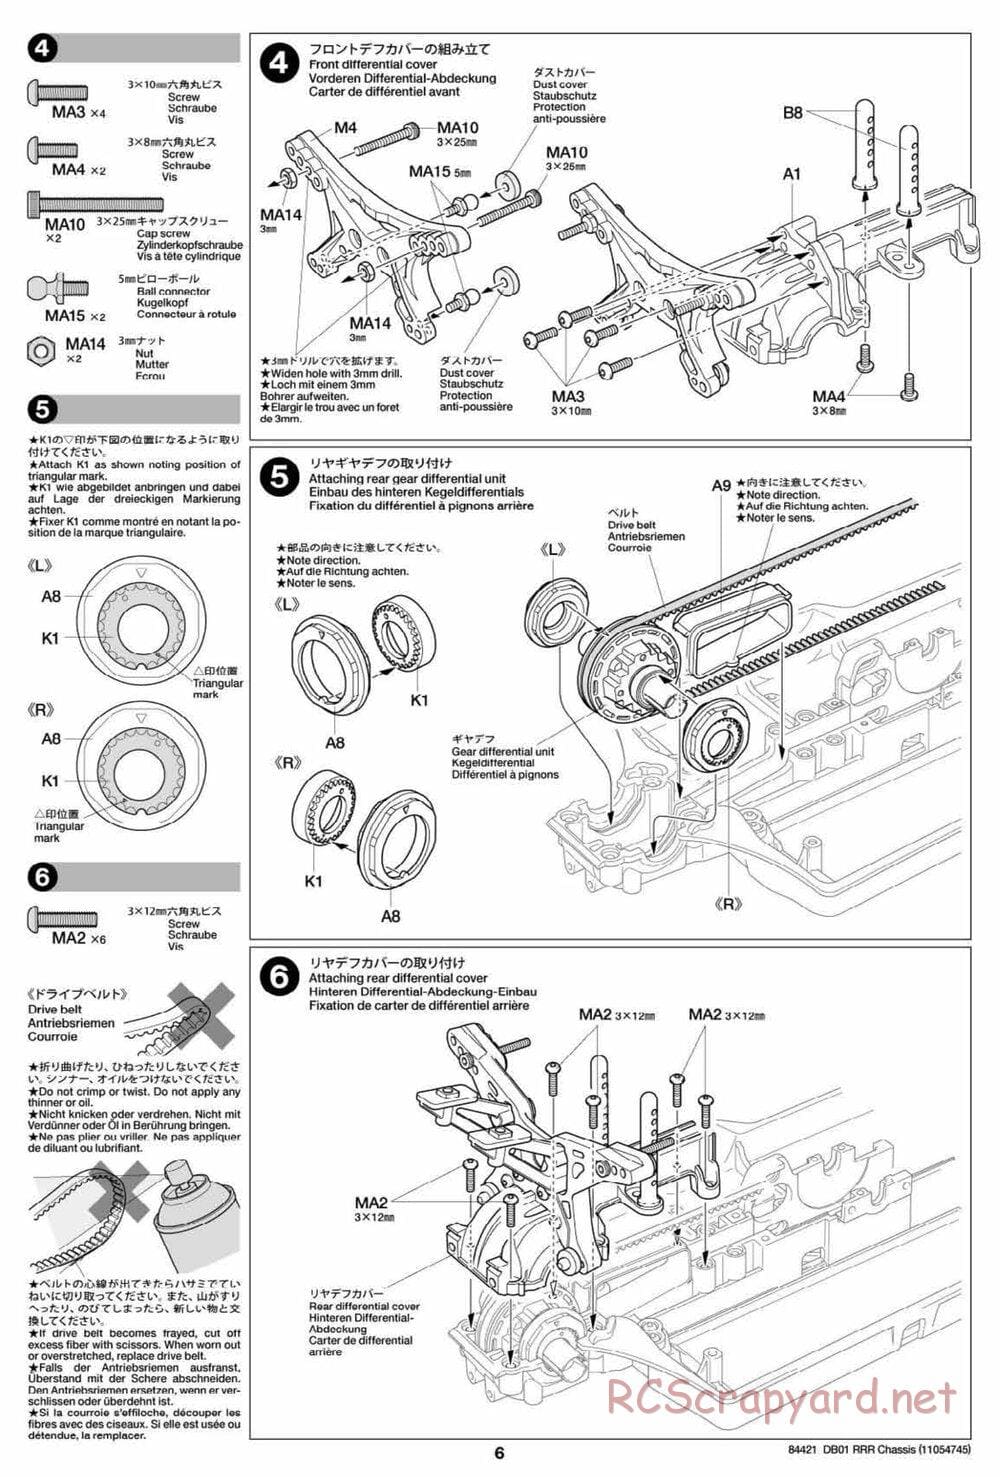 Tamiya - DB-01 RRR Chassis - Manual - Page 6